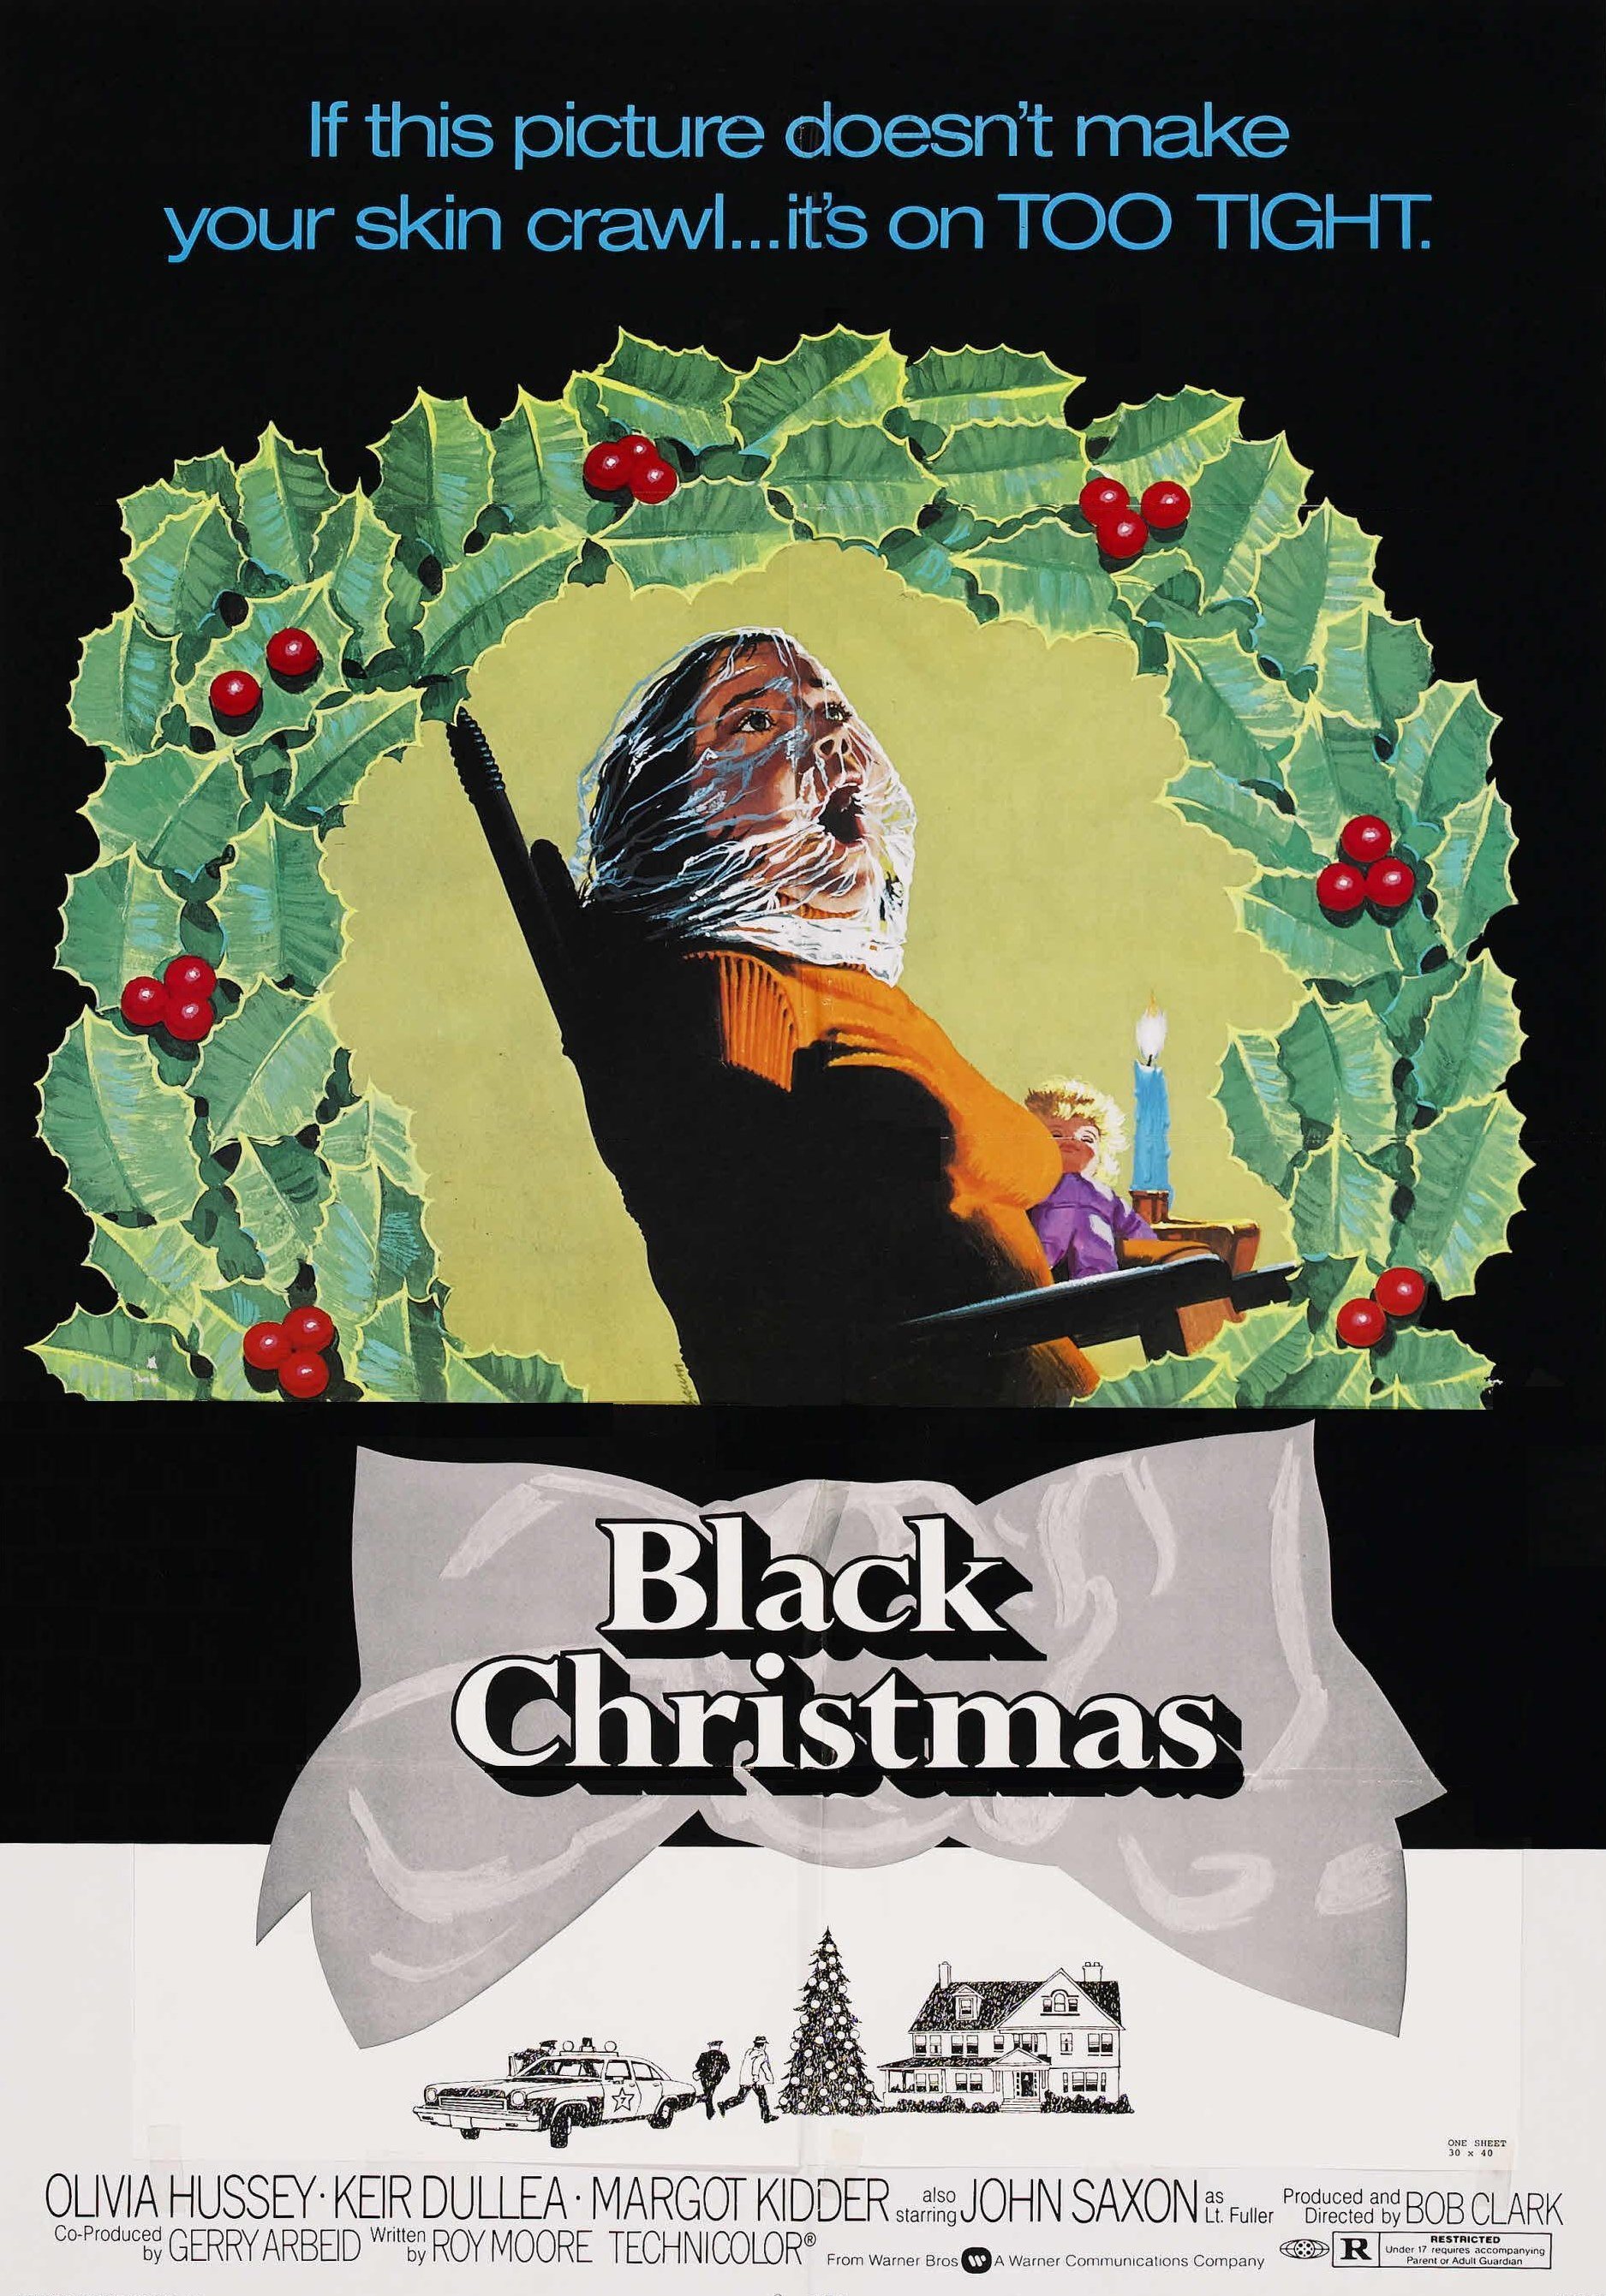 Black Christmas (original)